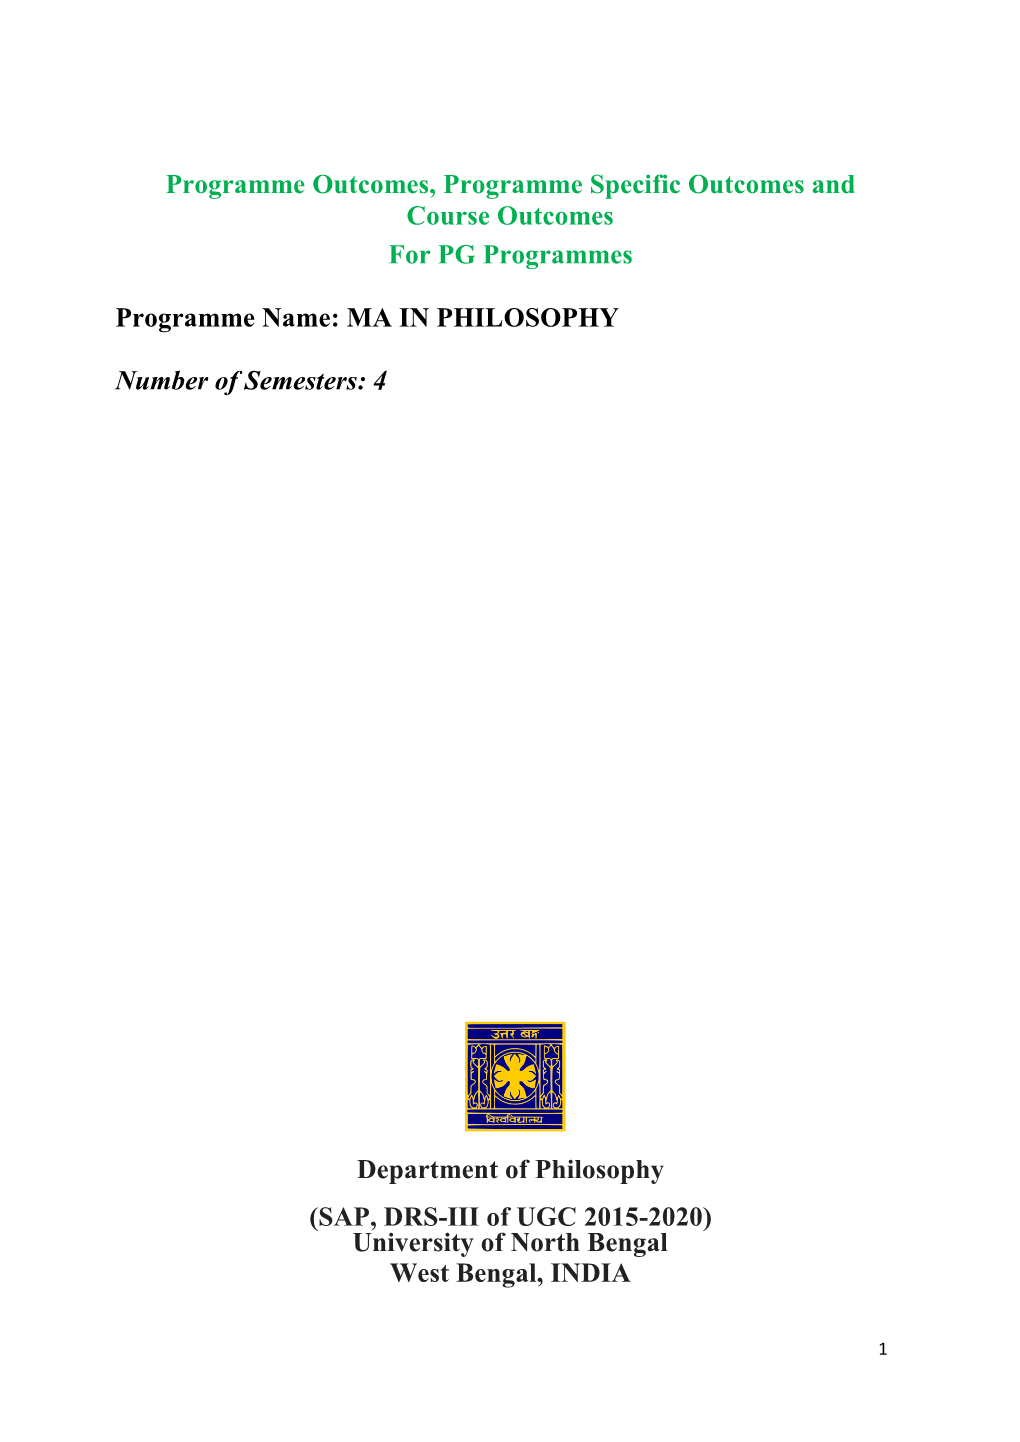 Programme & Course Outcomes